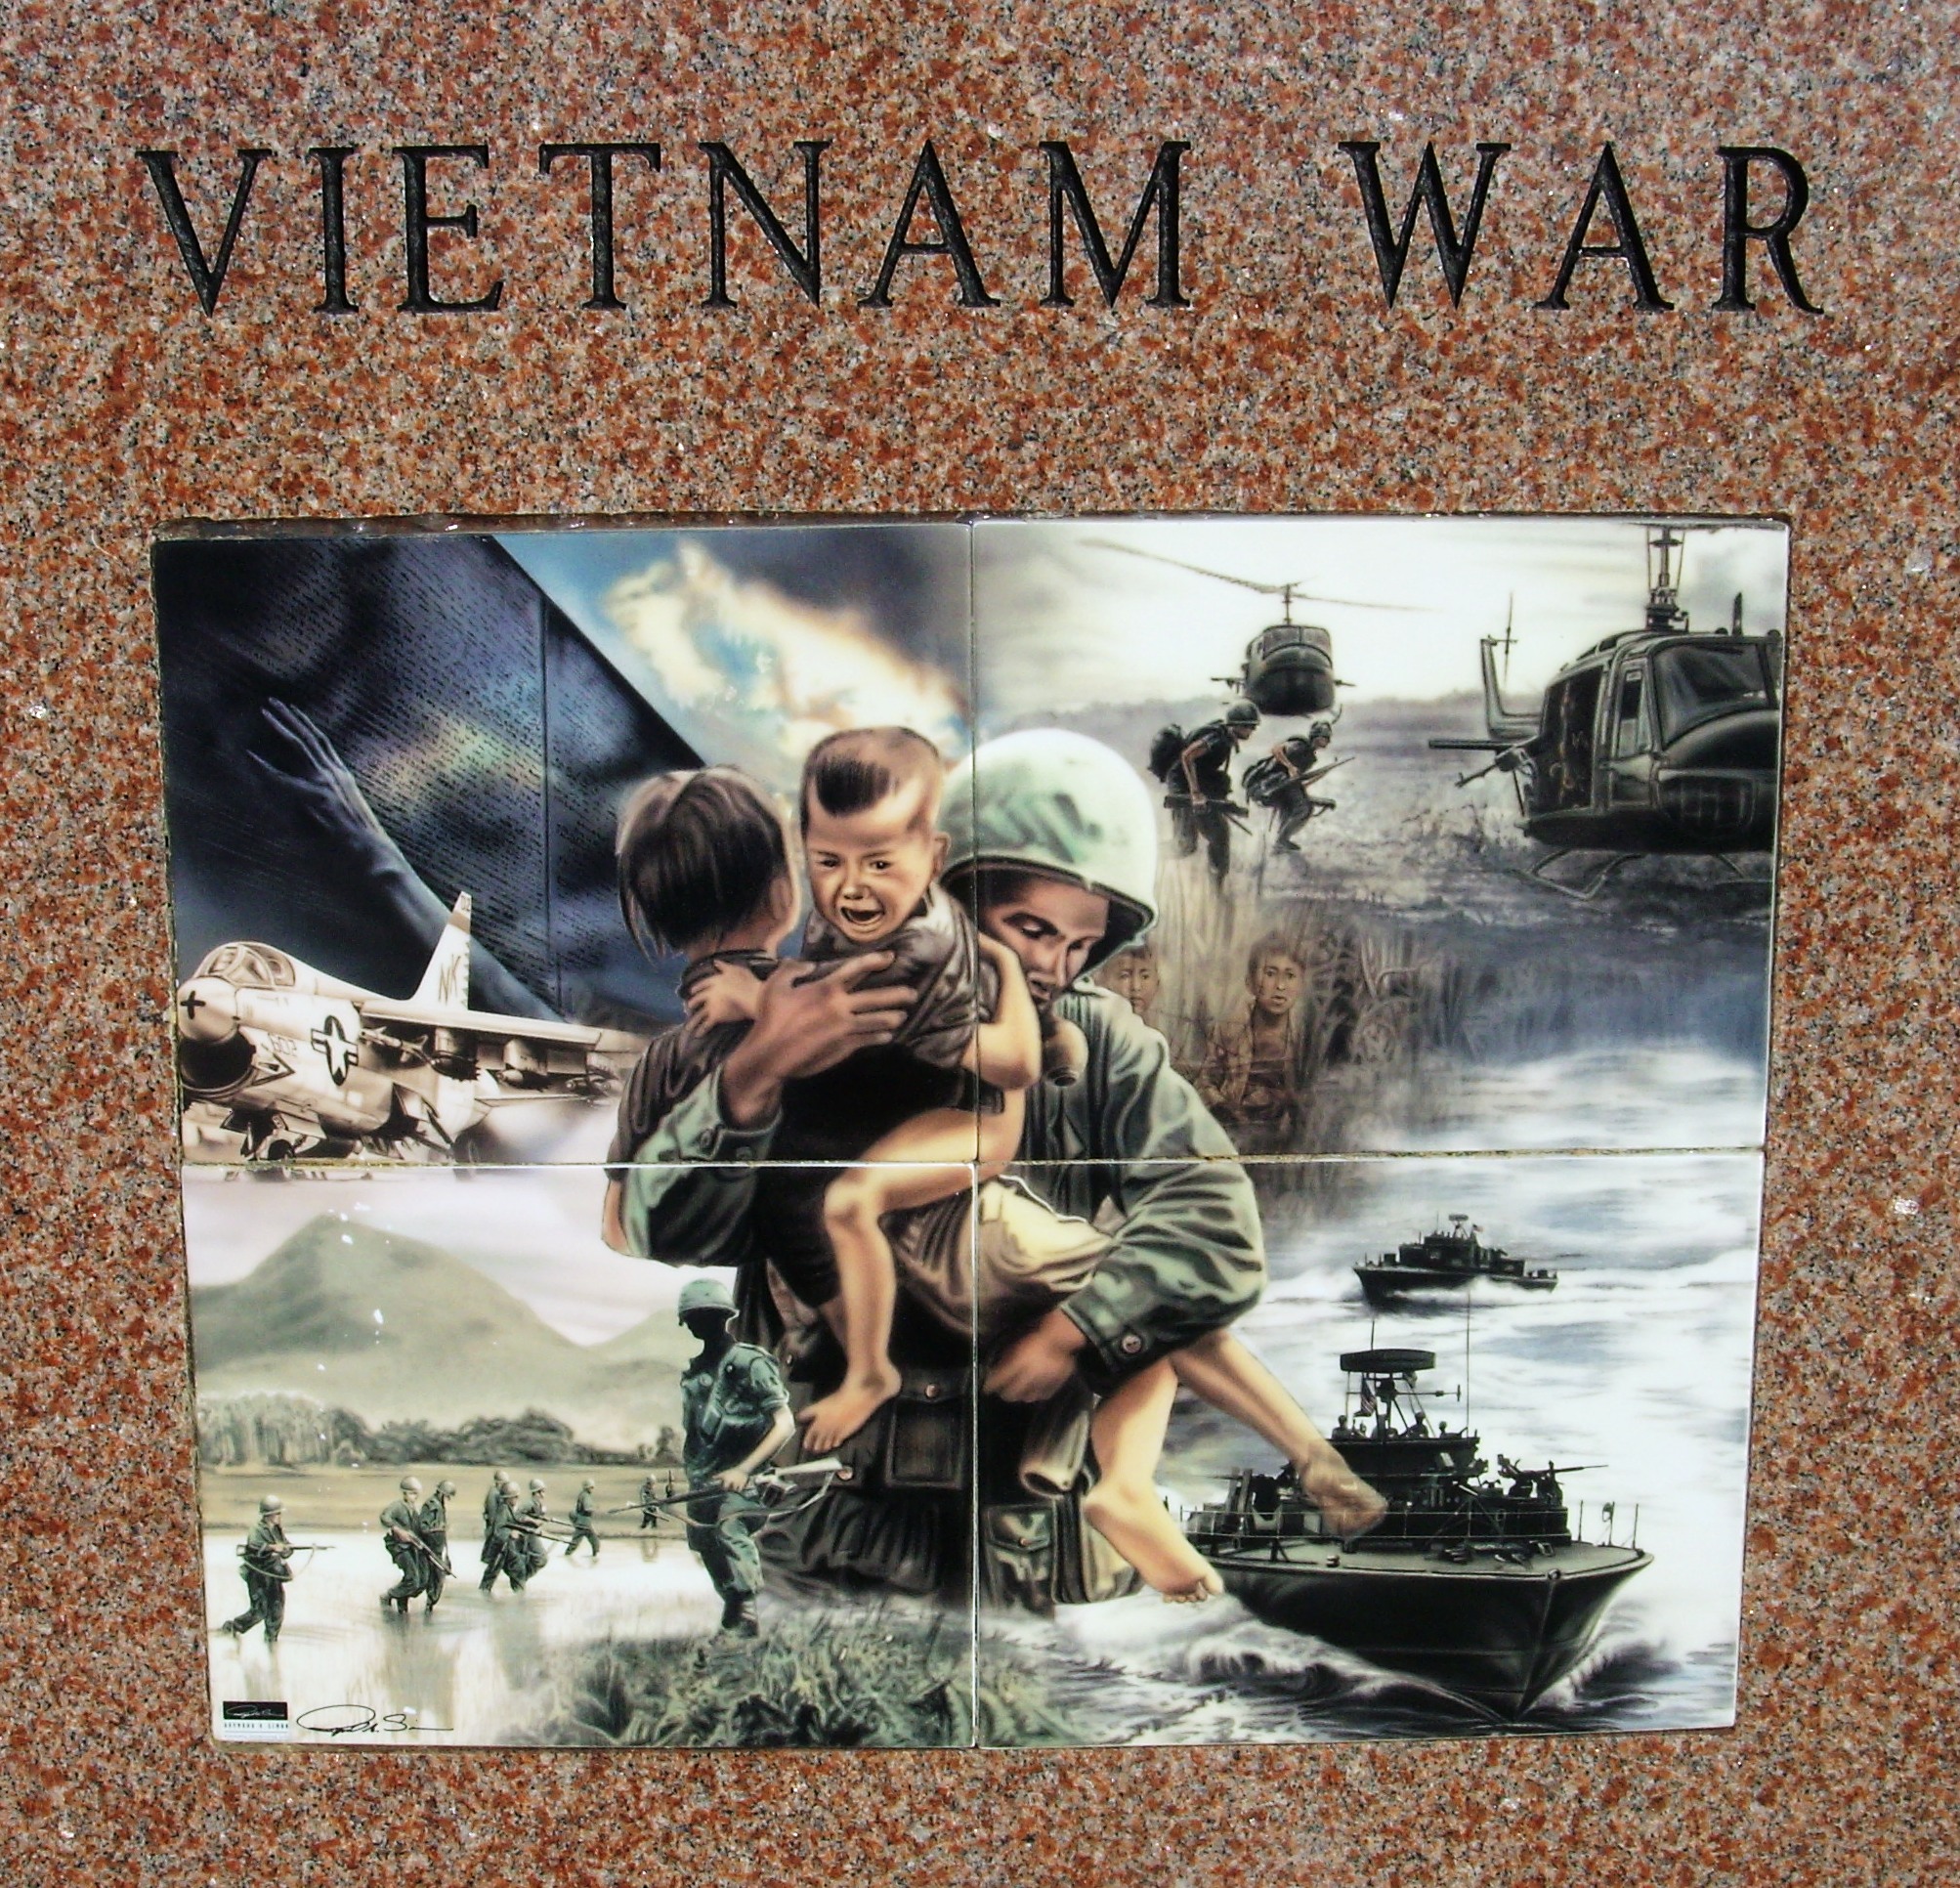 VIETNAM WAR.jpg